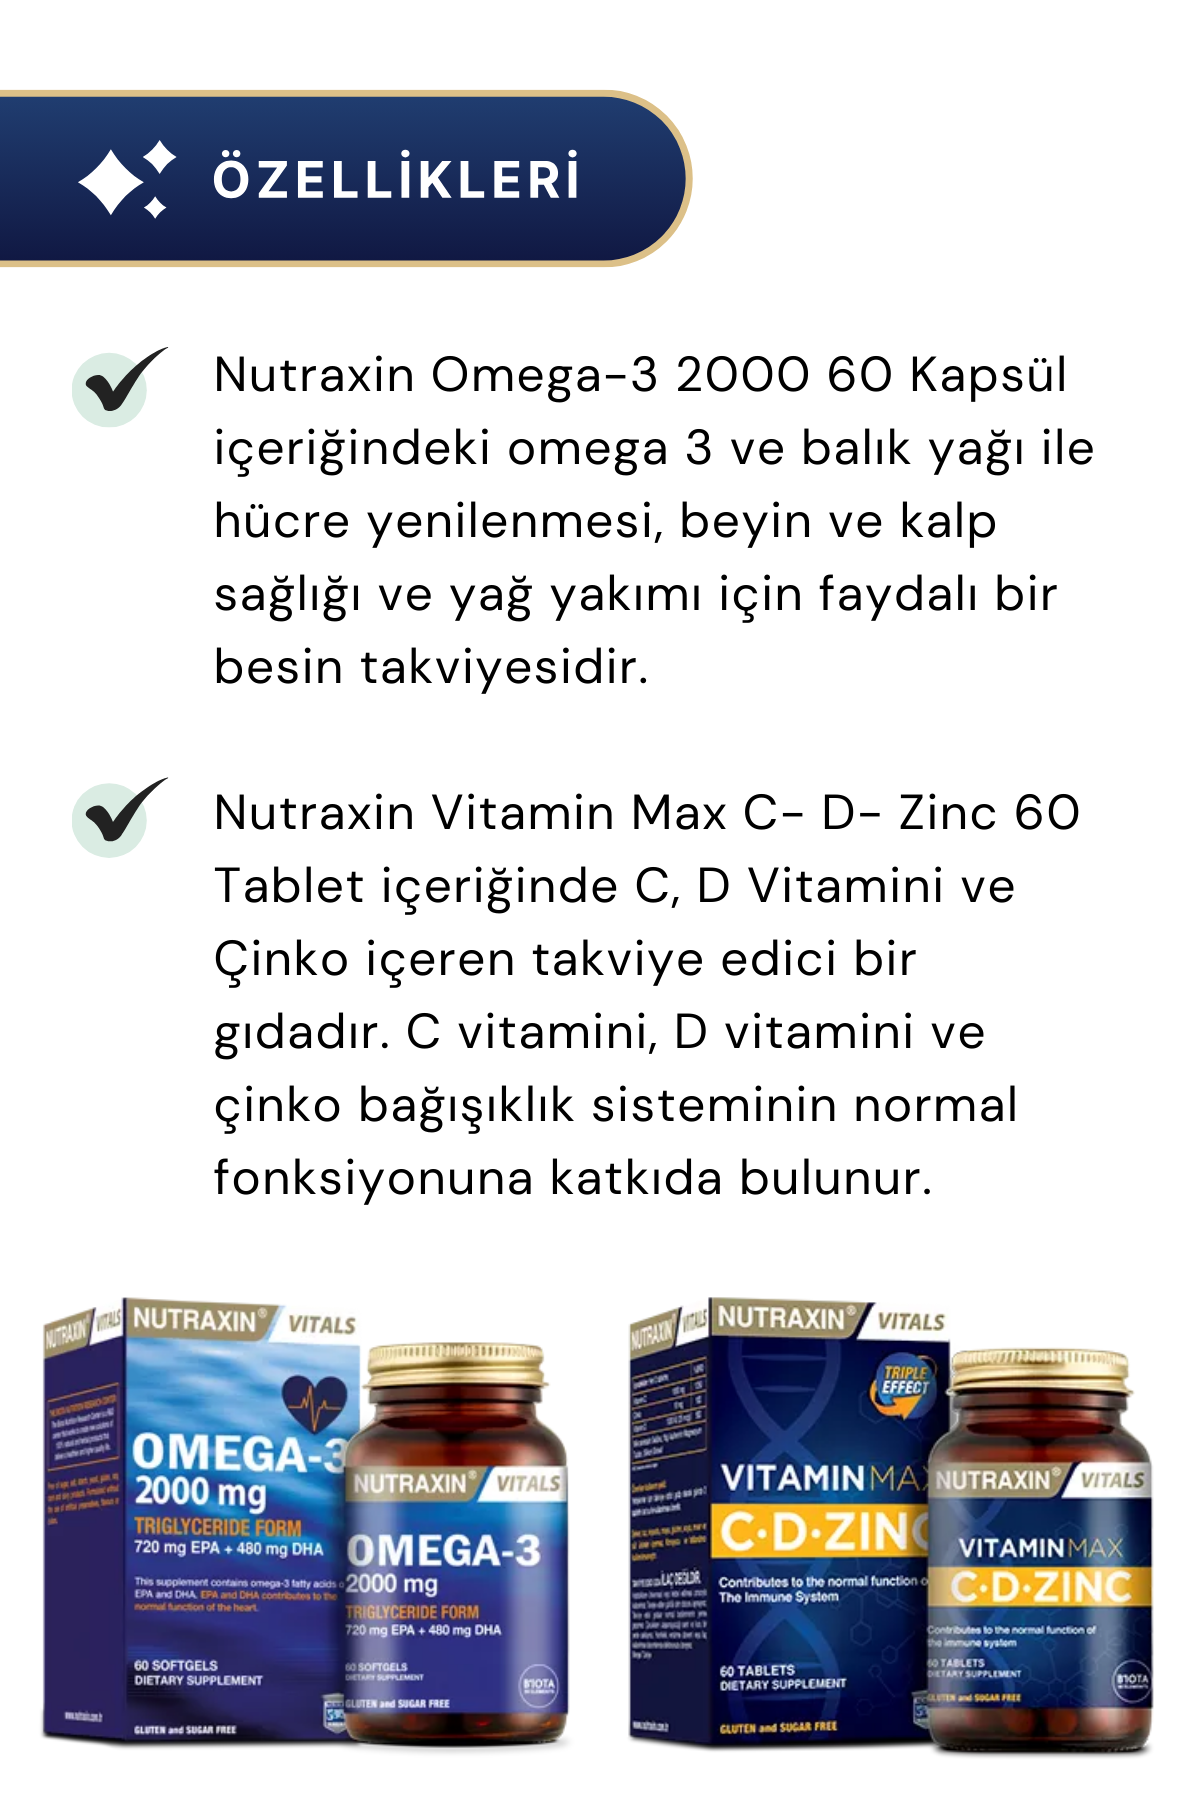 Nutraxin Omega-3 2000 mg & Vitamin Max C- D- Zinc